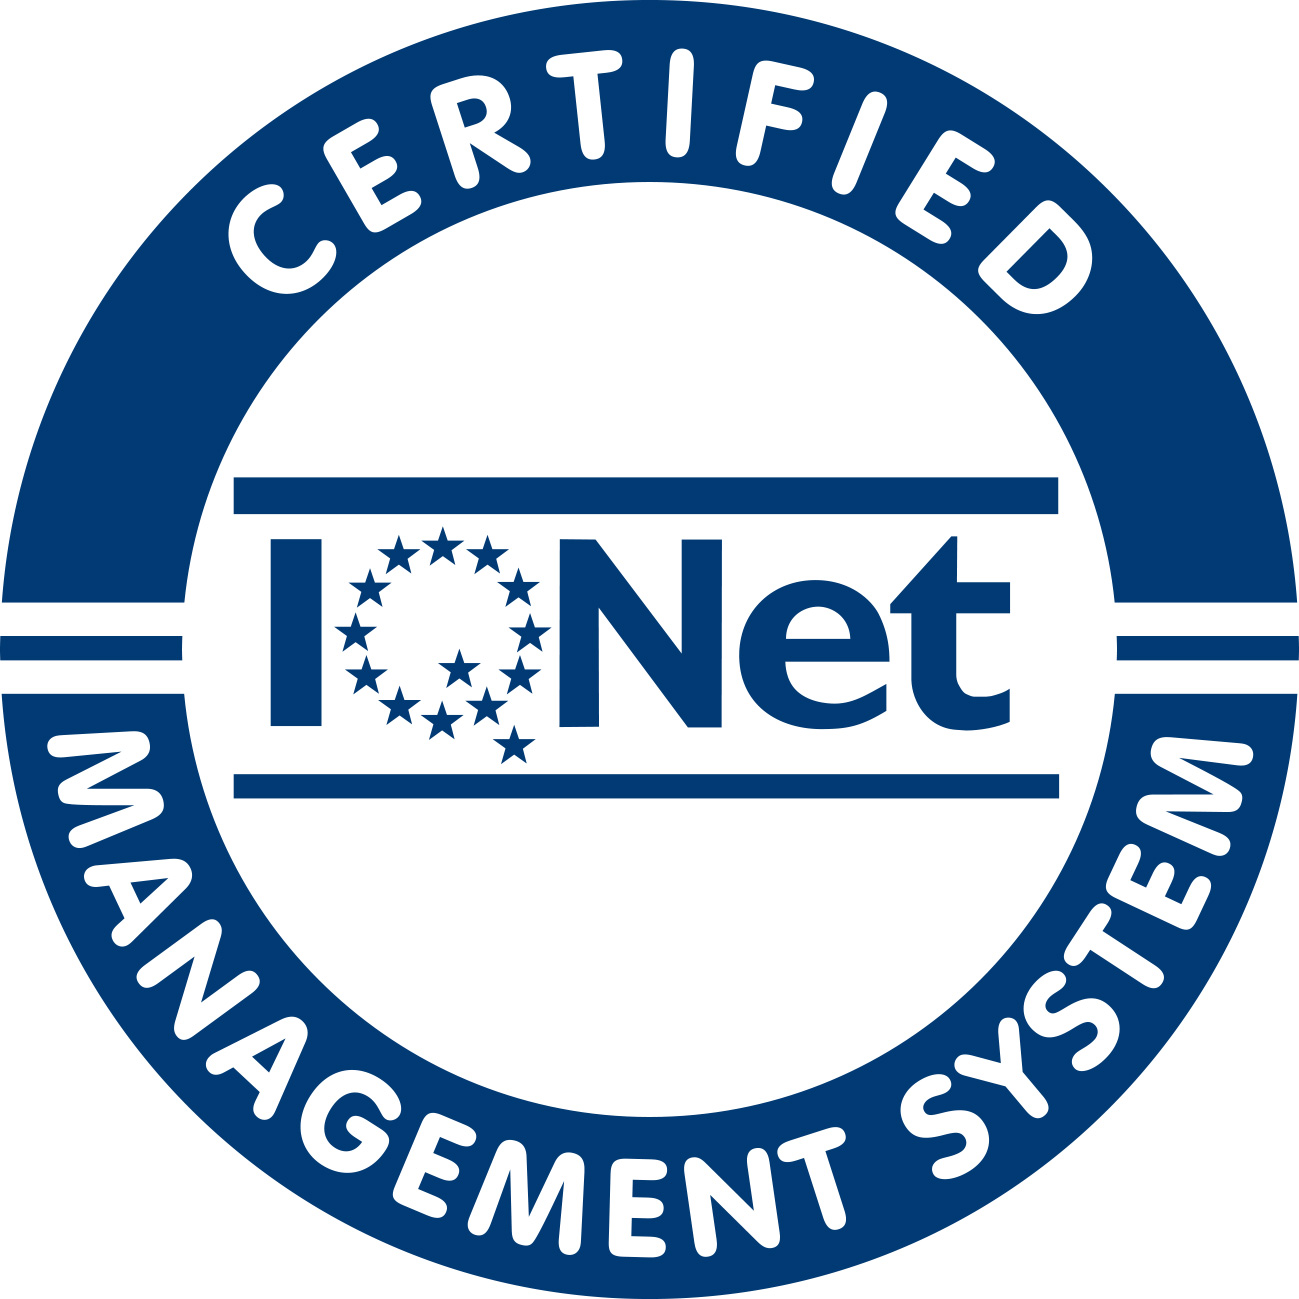 IQNet Zertifizierung des Unternehmens